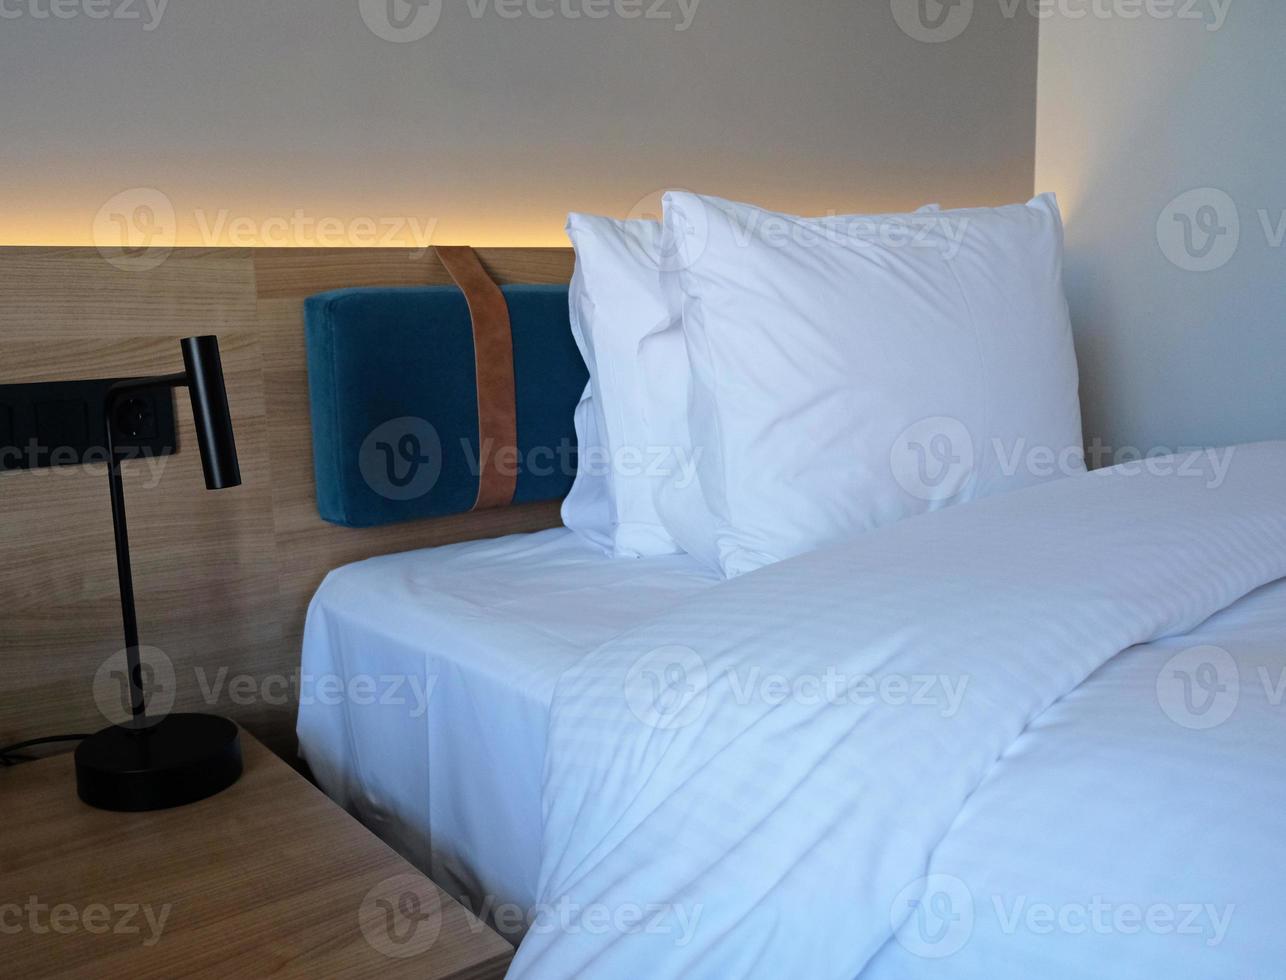 um fragmento de um quarto com um design de interiores moderno e aconchegante de uma casa ou hotel. travesseiro macio e cobertor, móveis elegantes e confortáveis. foto